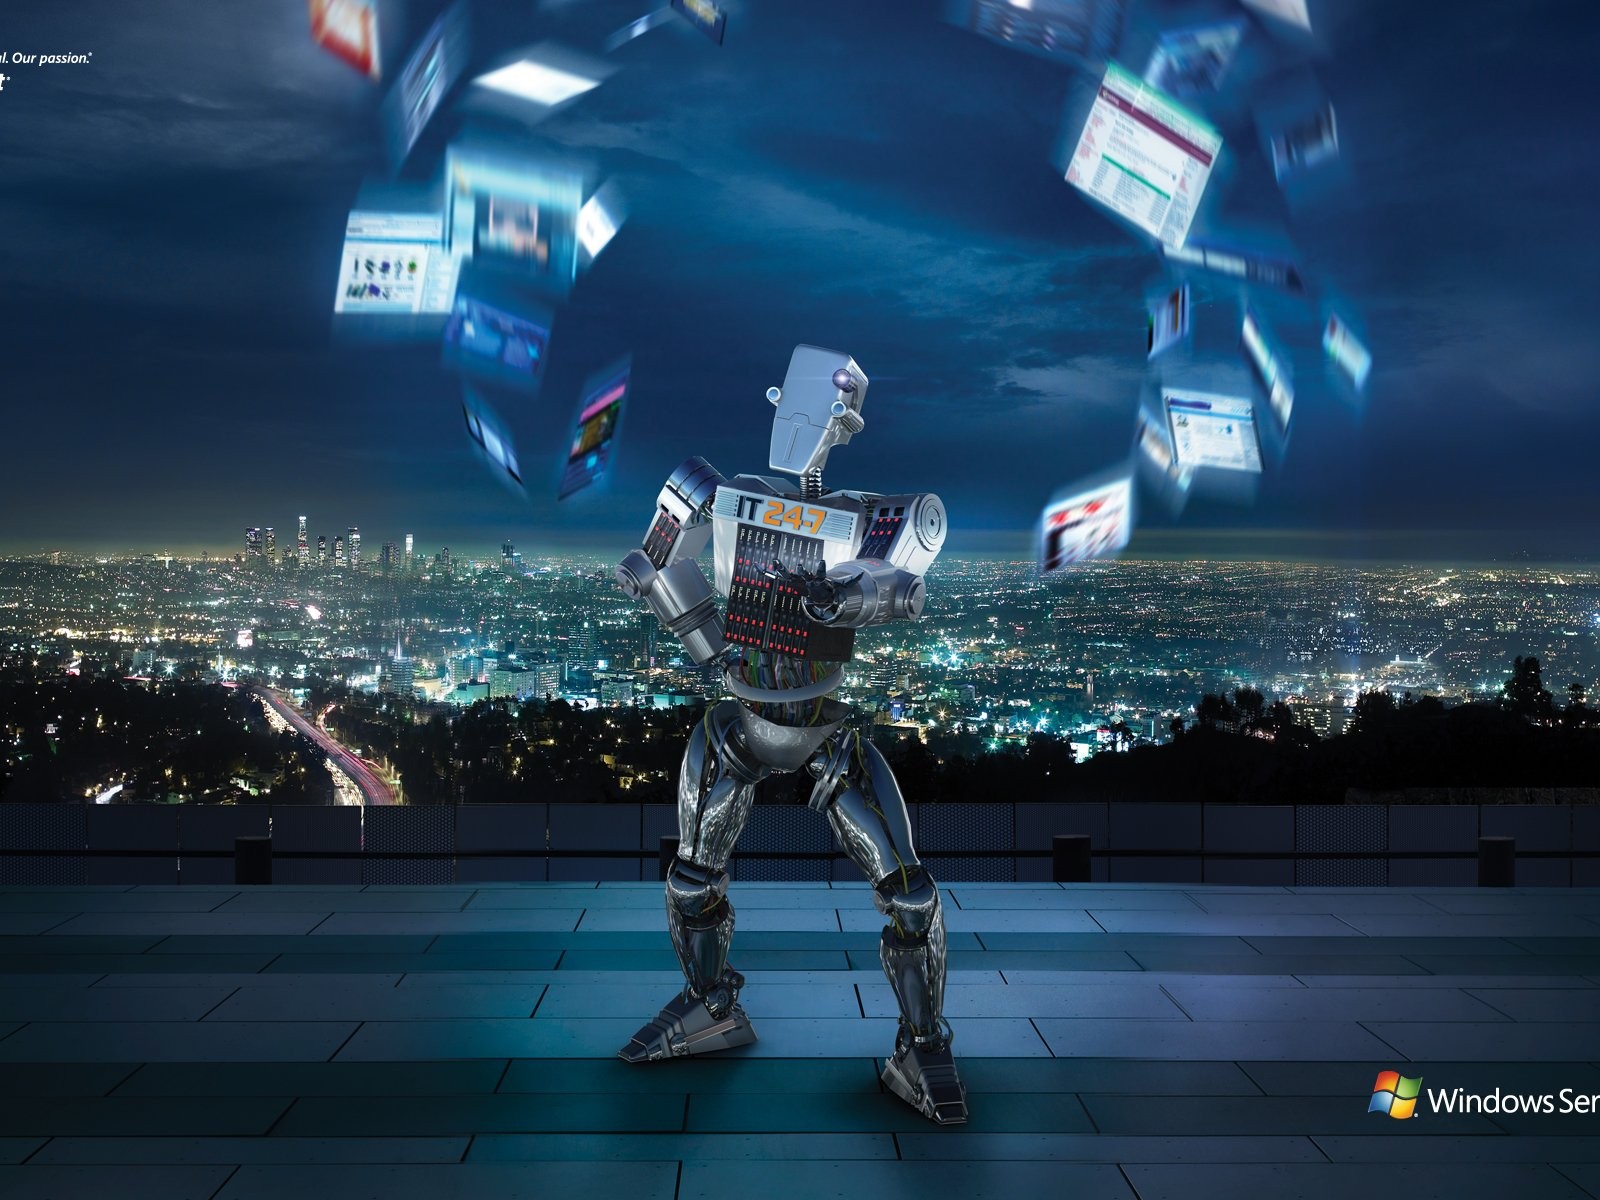 윈도우의 IT 로봇 광고 #1 - 1600x1200